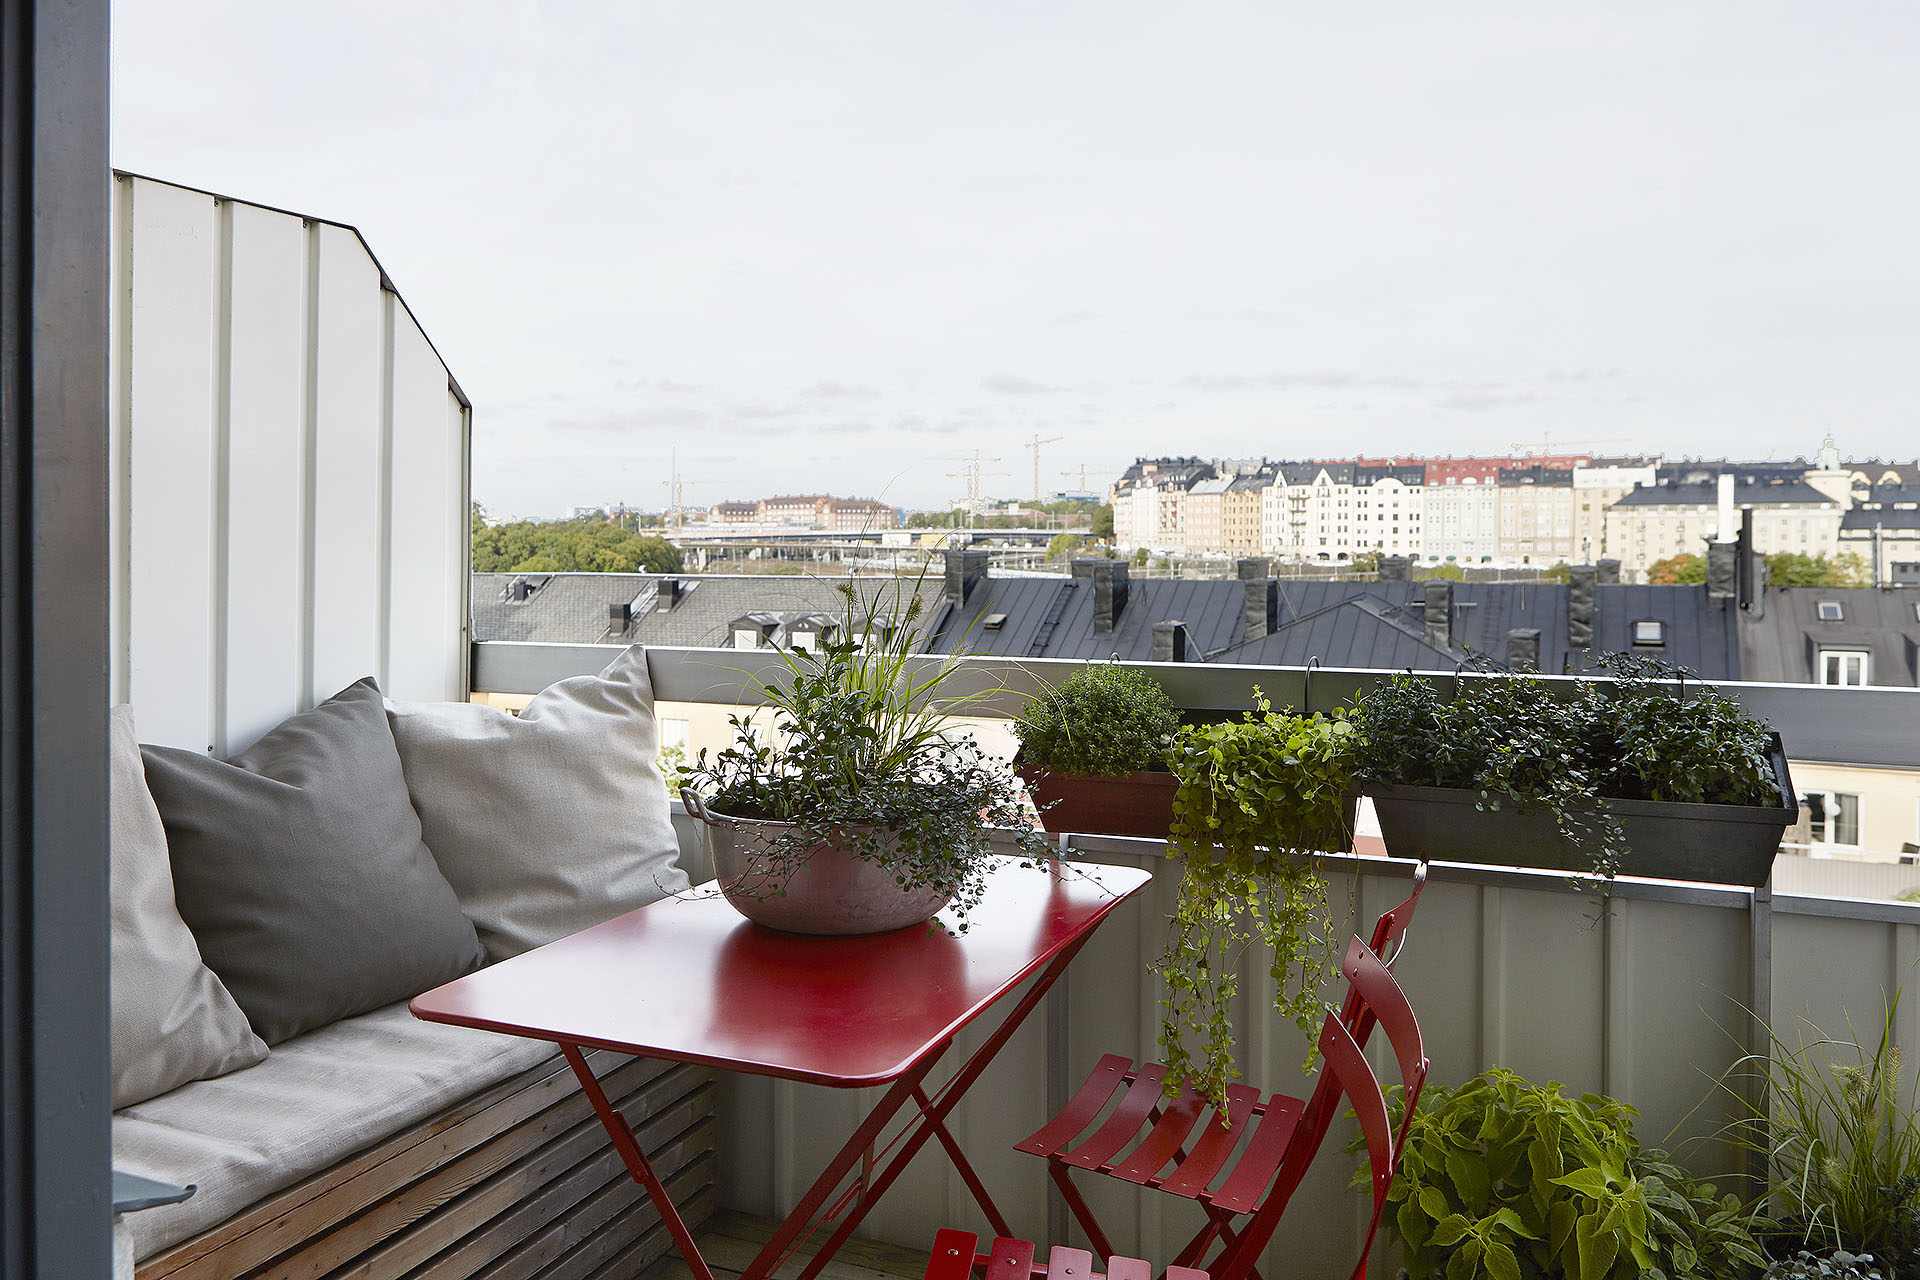 Pequeña terraza de estilo sueco ¡aprovecha el espacio!